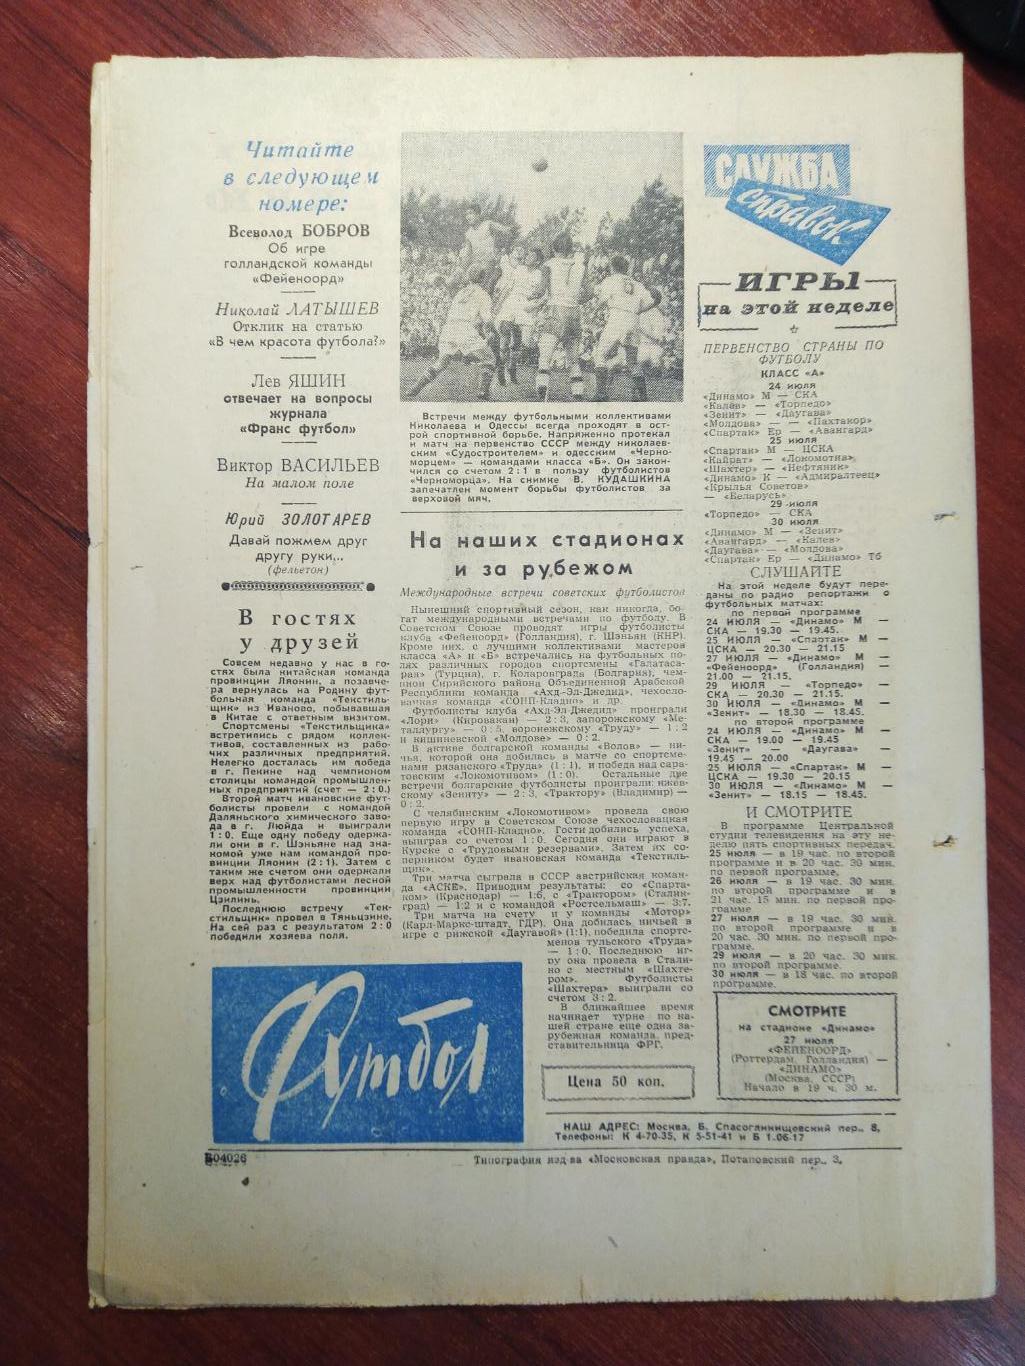 Еженедельник Футбол №9 от 24 июля 1960.Первый год выпуска! 1